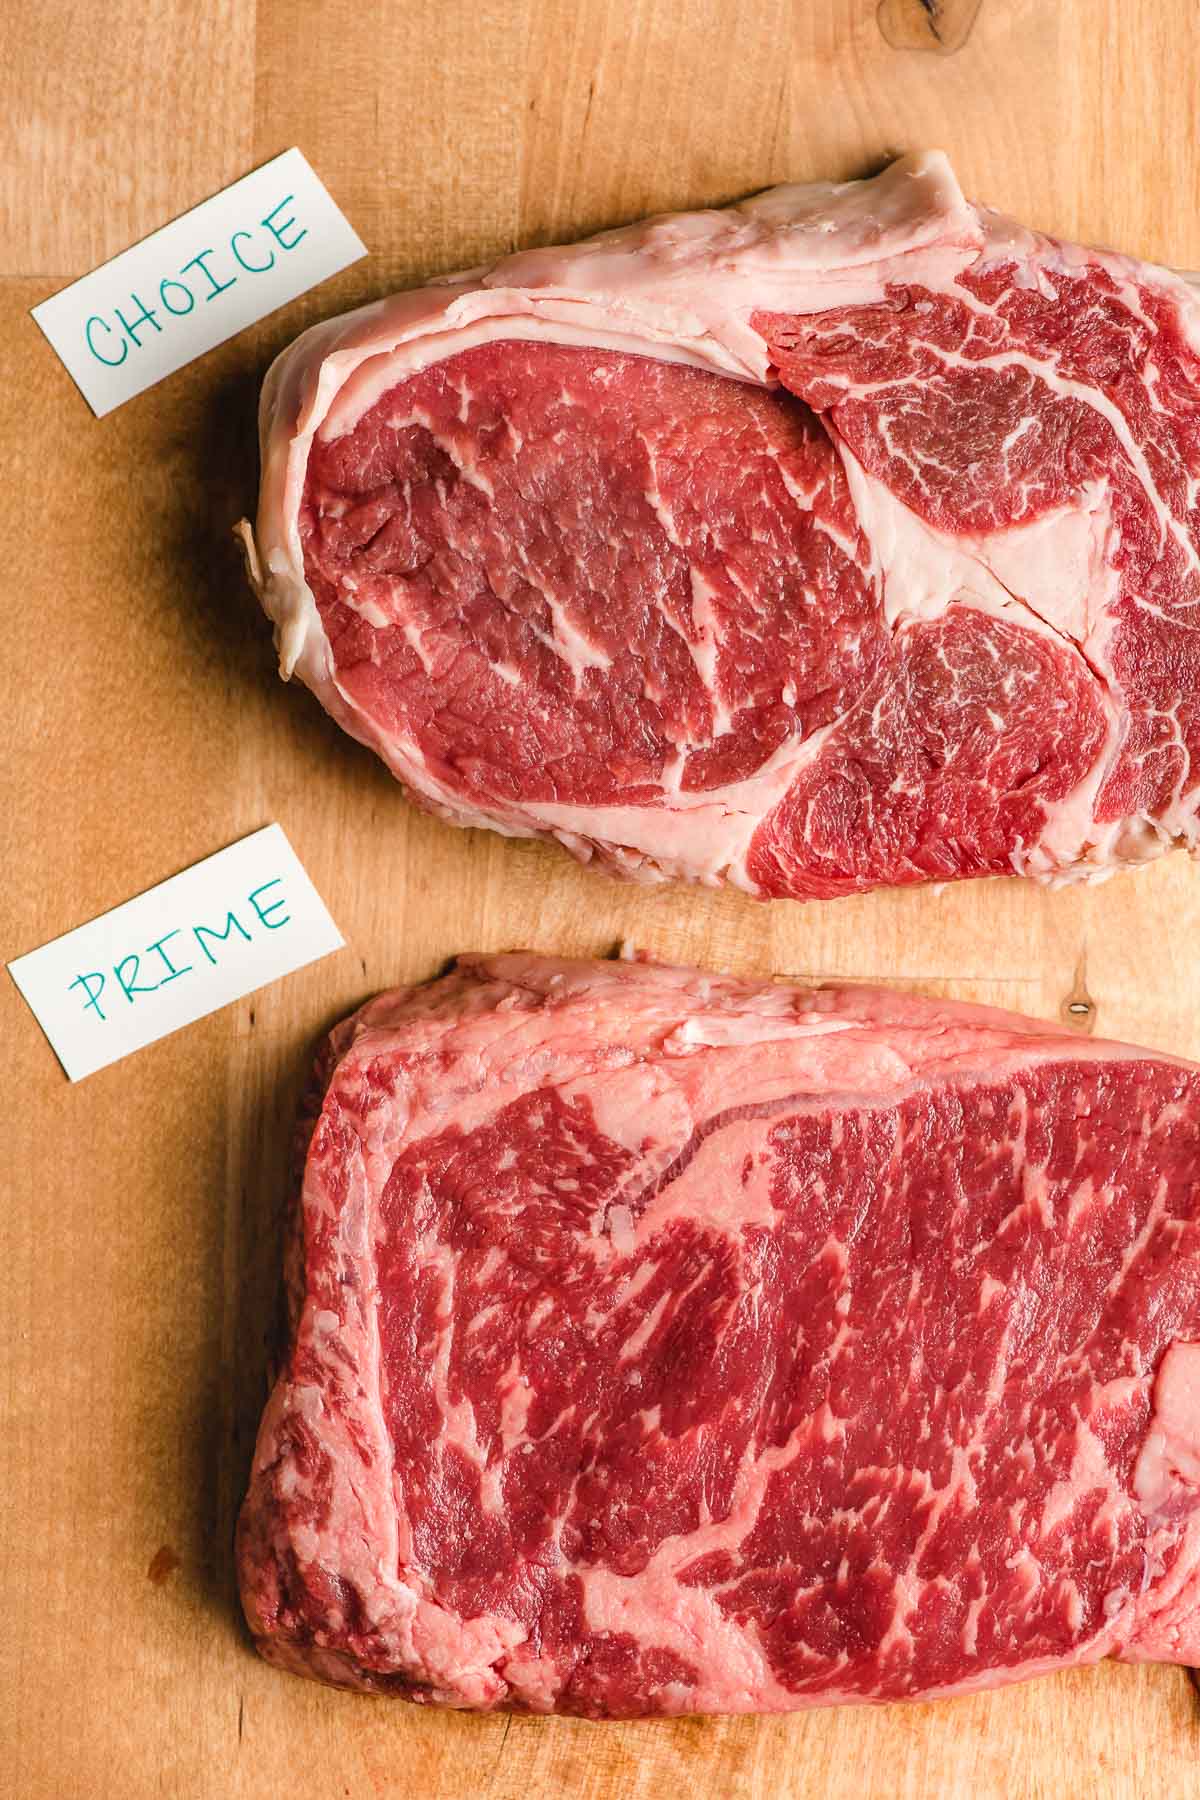 Choice vs prime beef ribeye steaks.